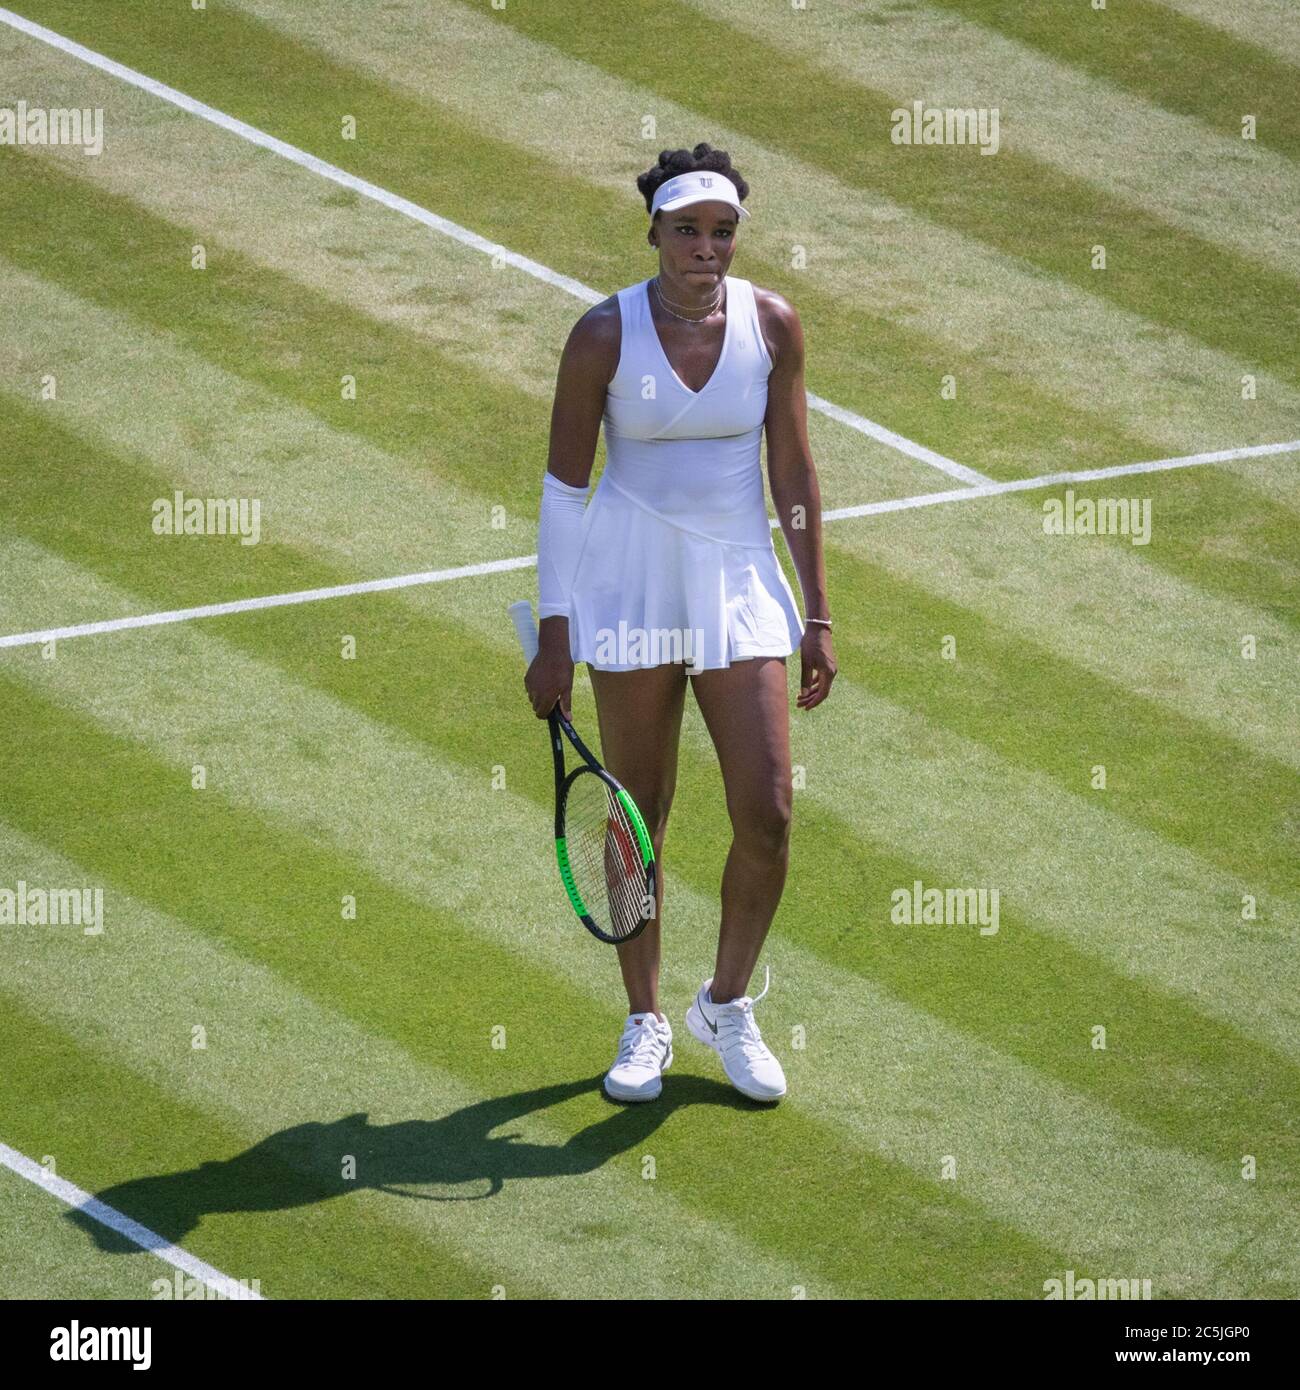 Venus Williams, joueur américain de tennis, lors d'un match aux Championnats 2018, Wimbledon All England Lawn tennis Club, Londres, Royaume-Uni Banque D'Images